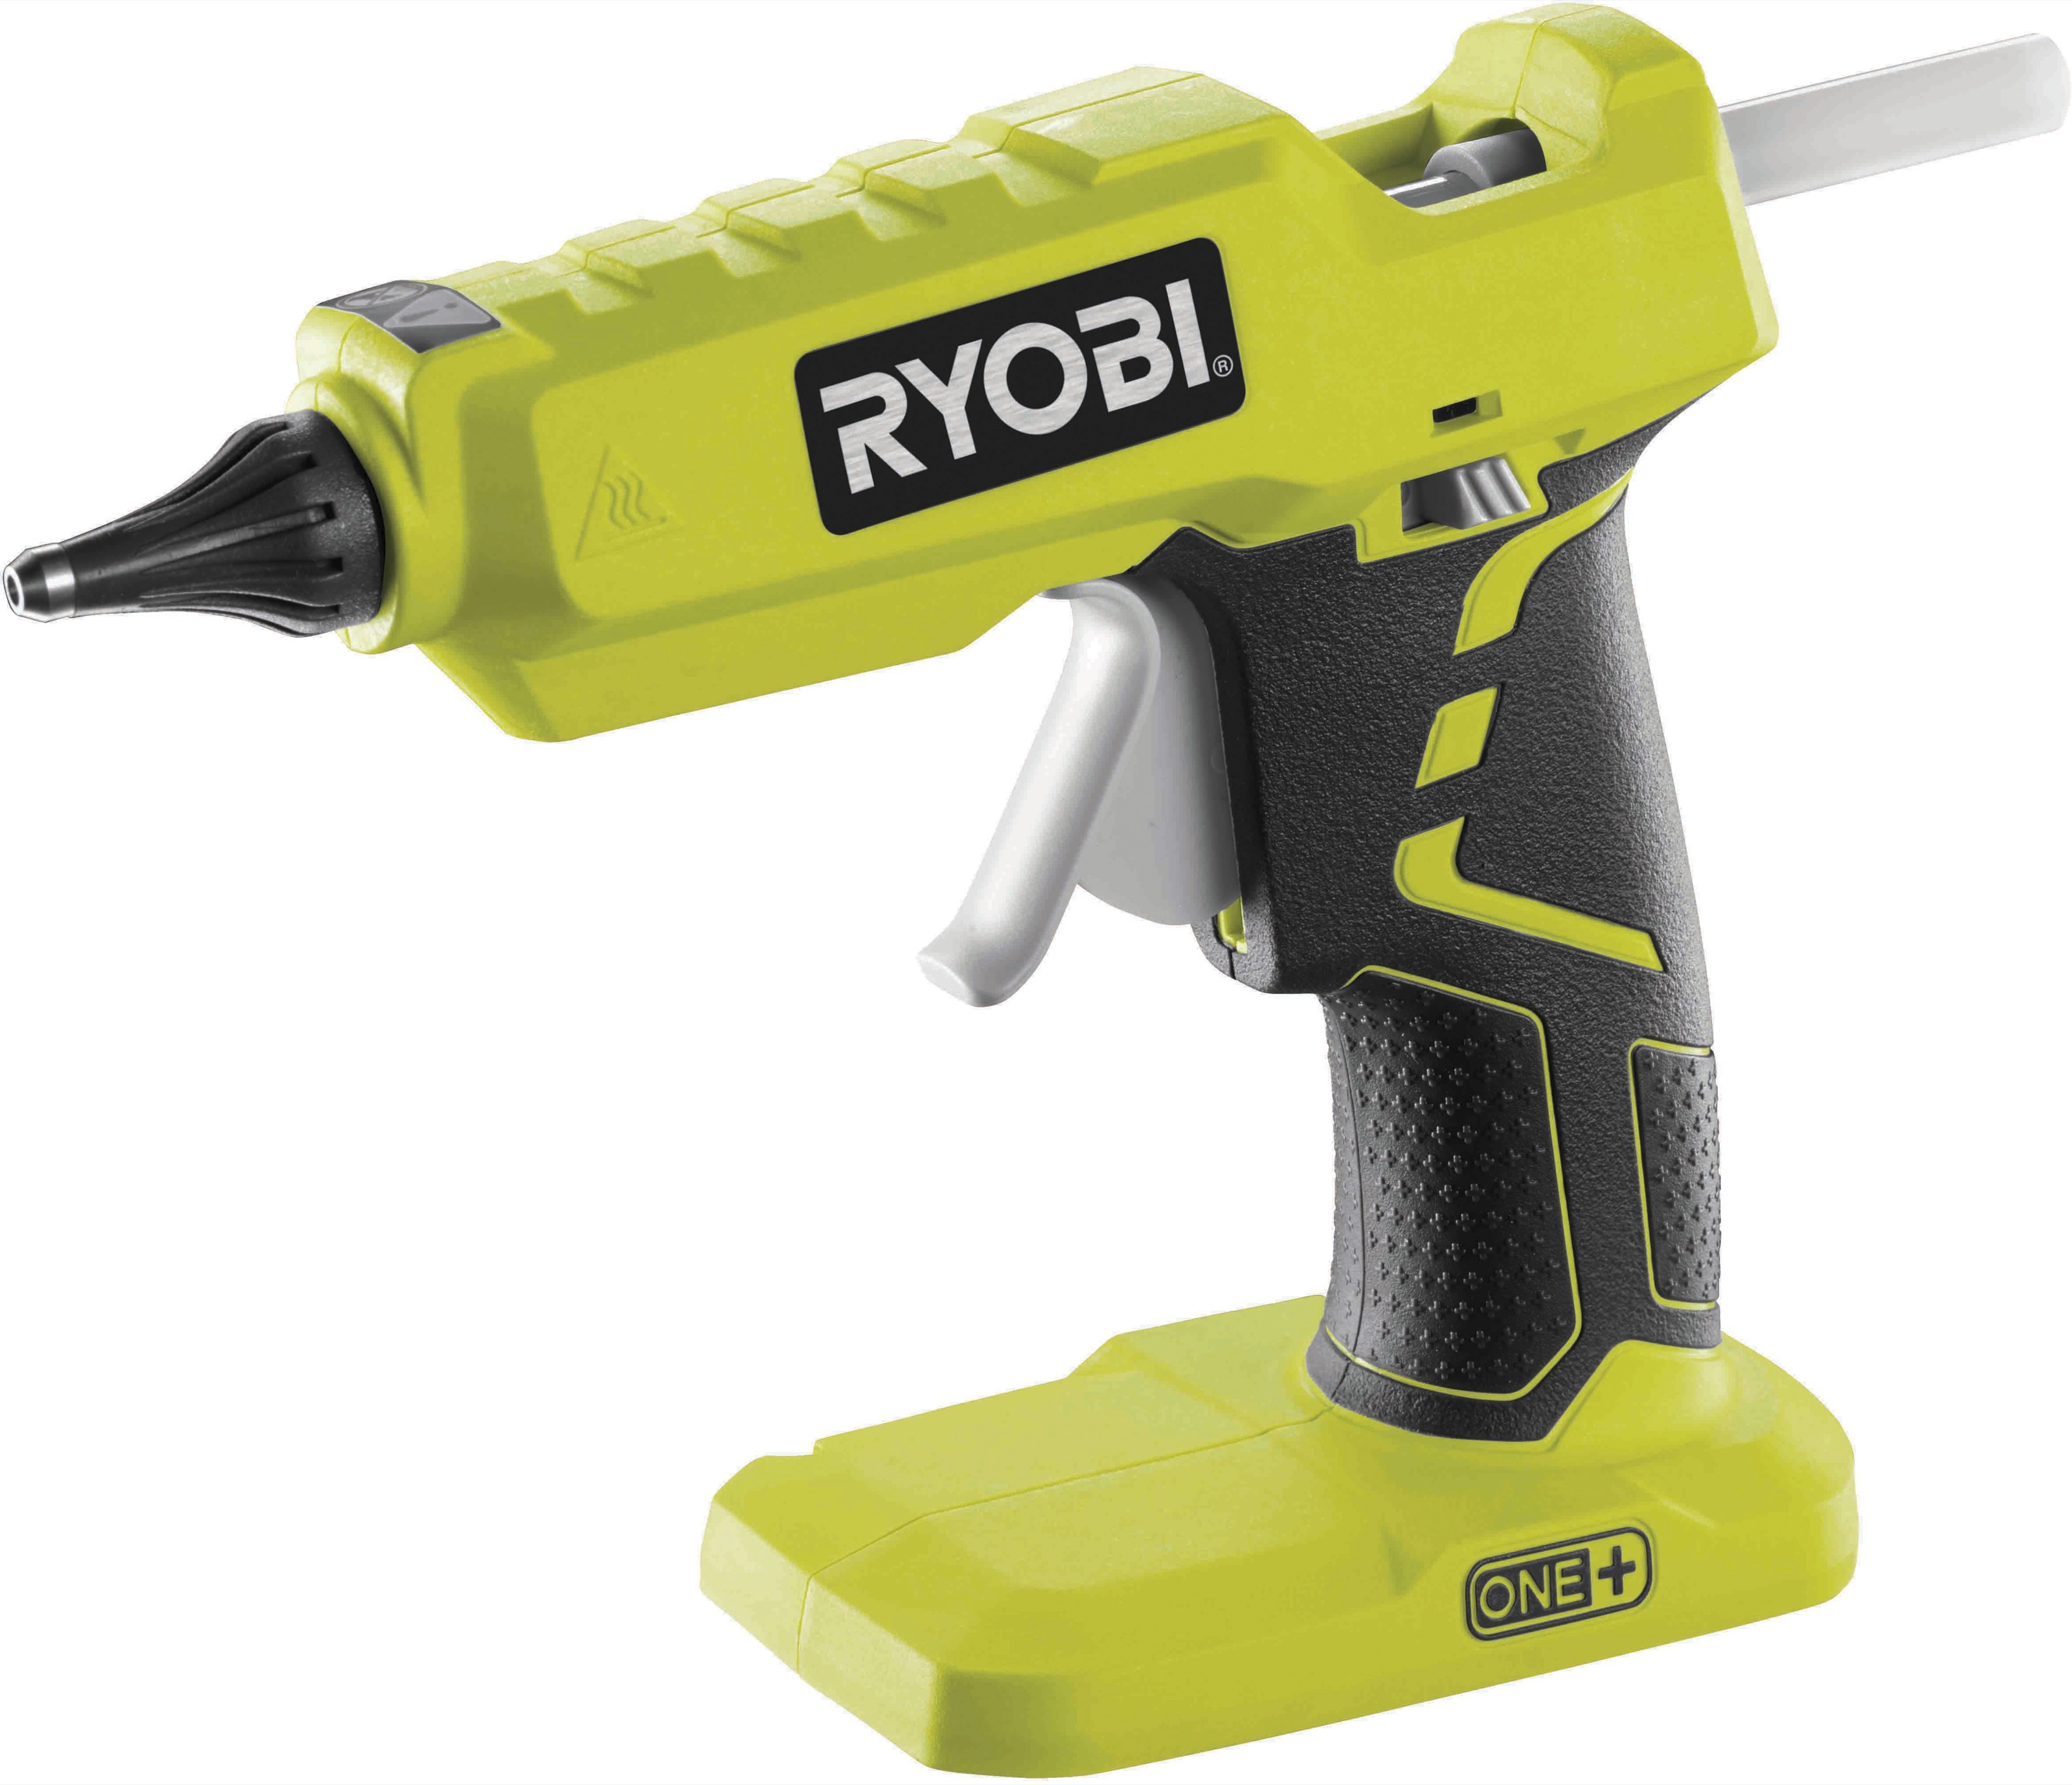 Ryobi R18GLU-0 limpistol u/batteri og lader